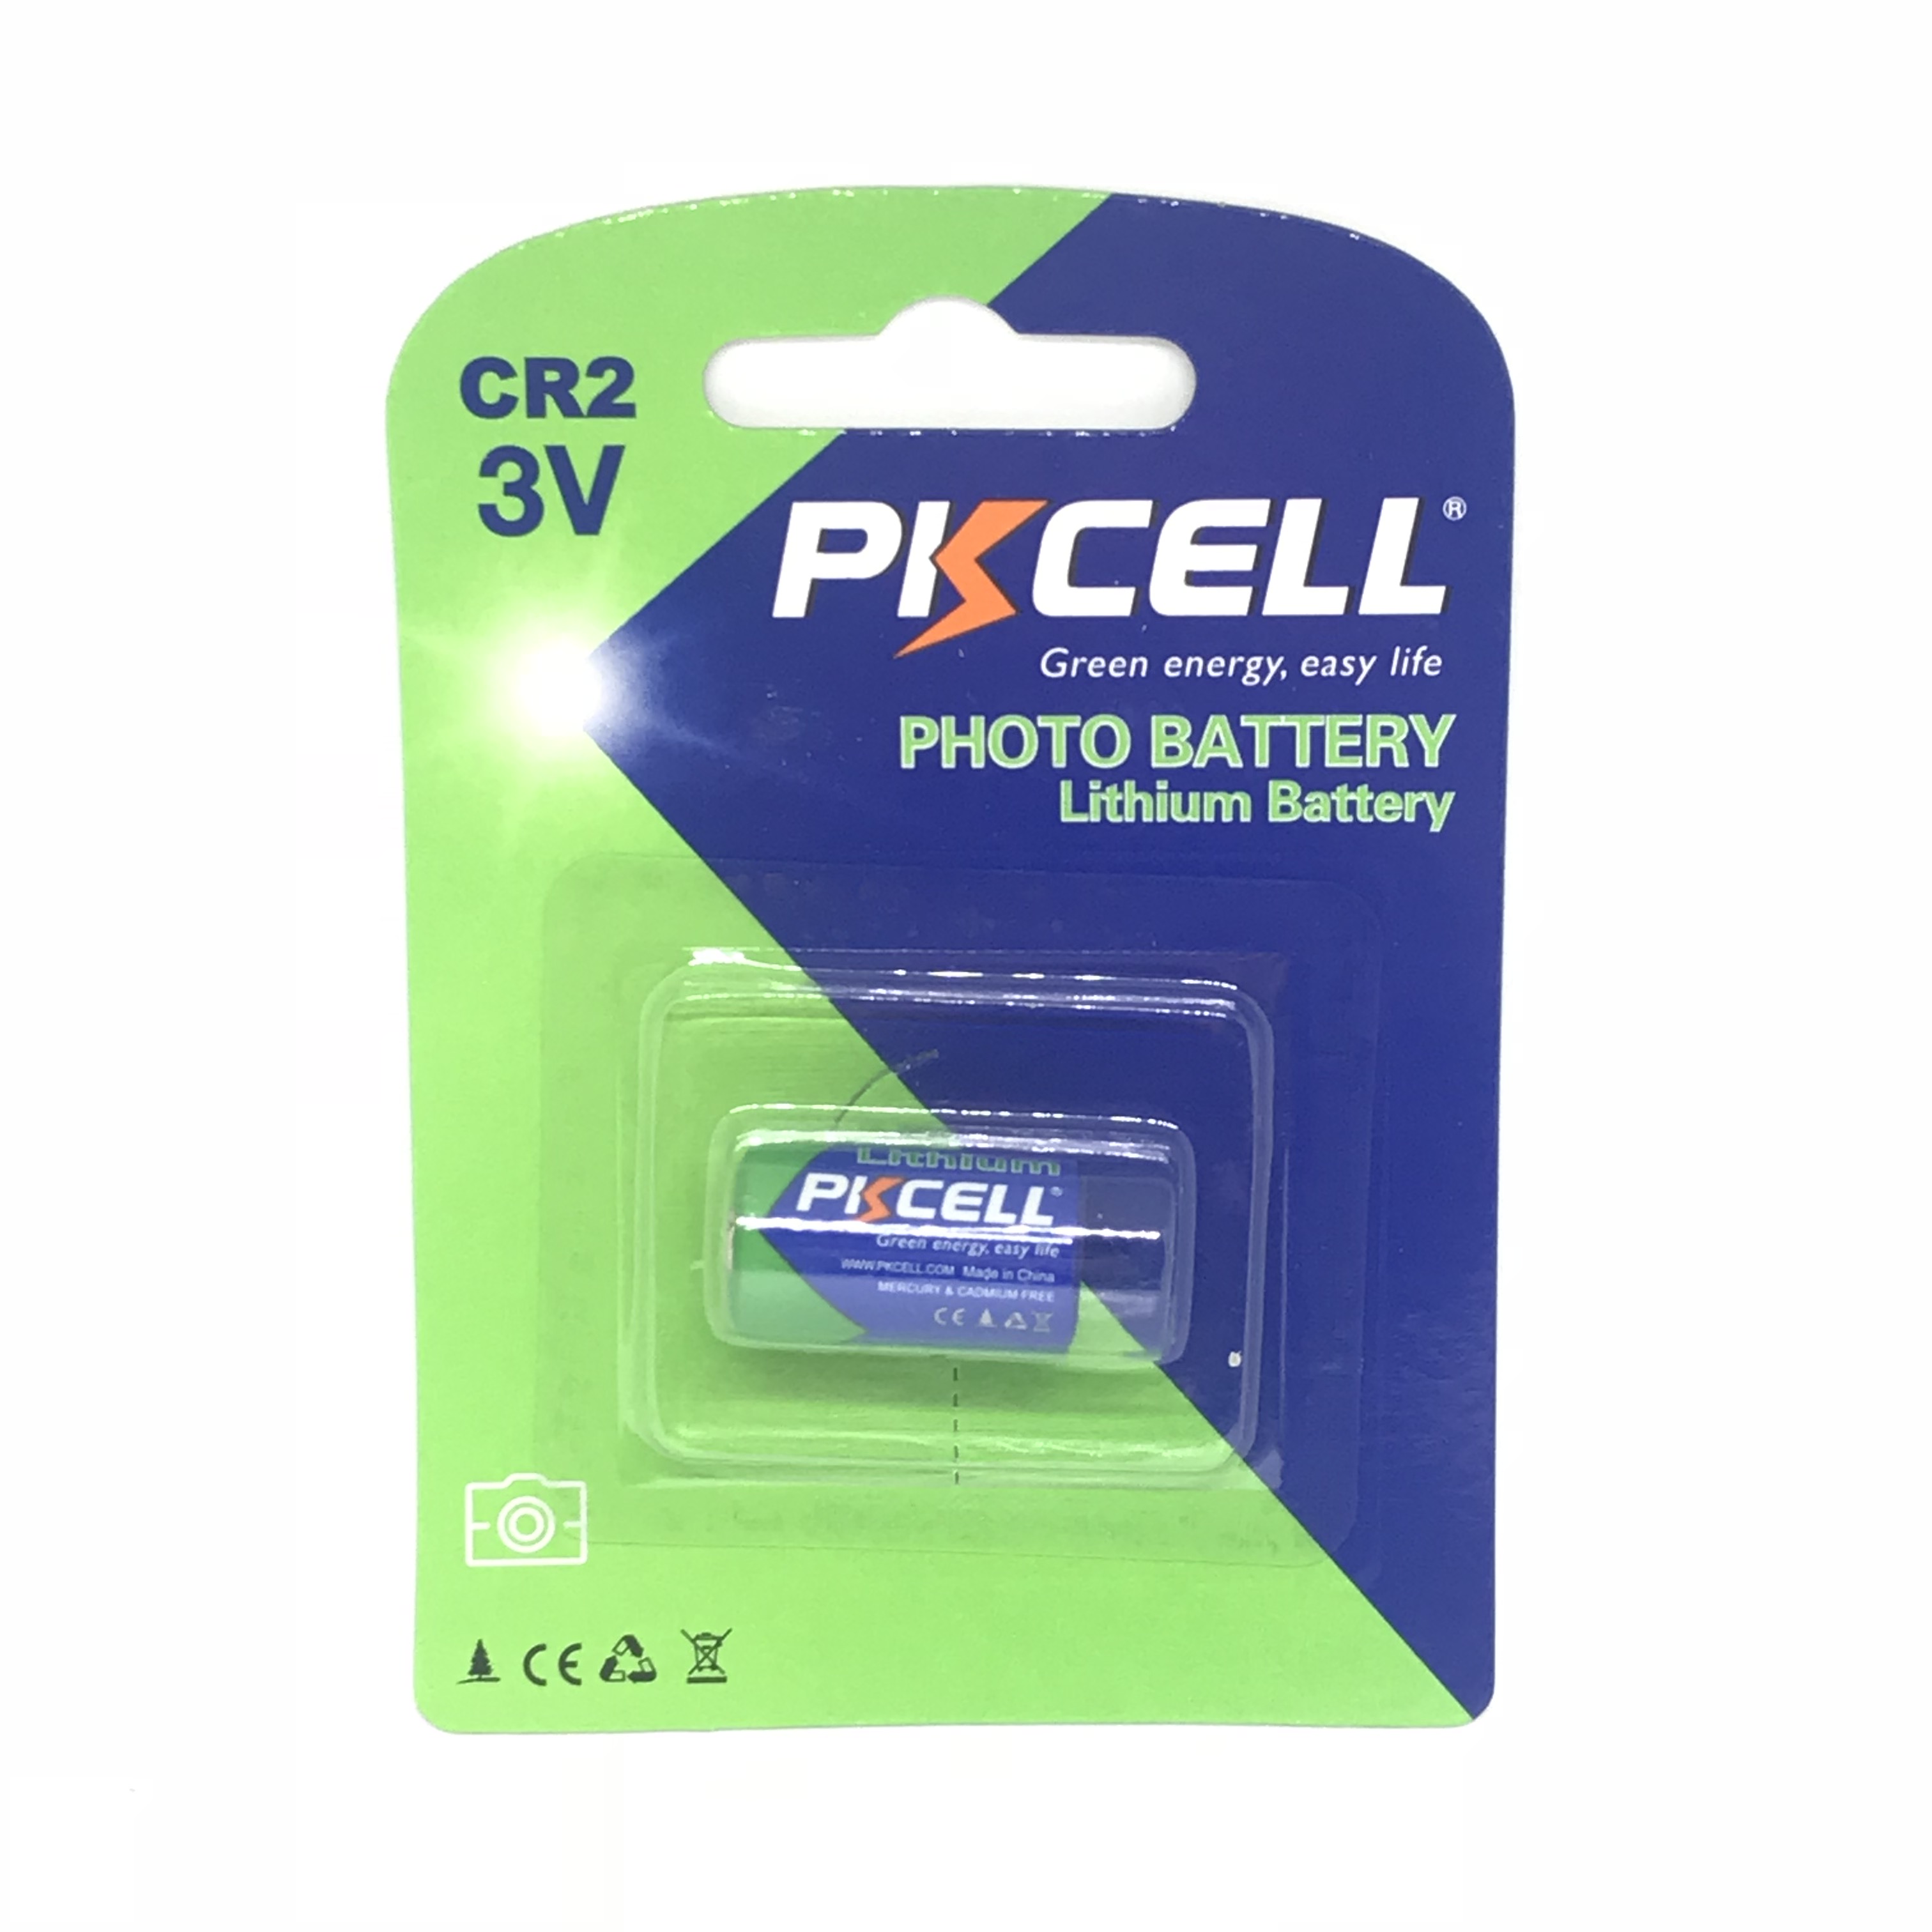 PK CELL CR2